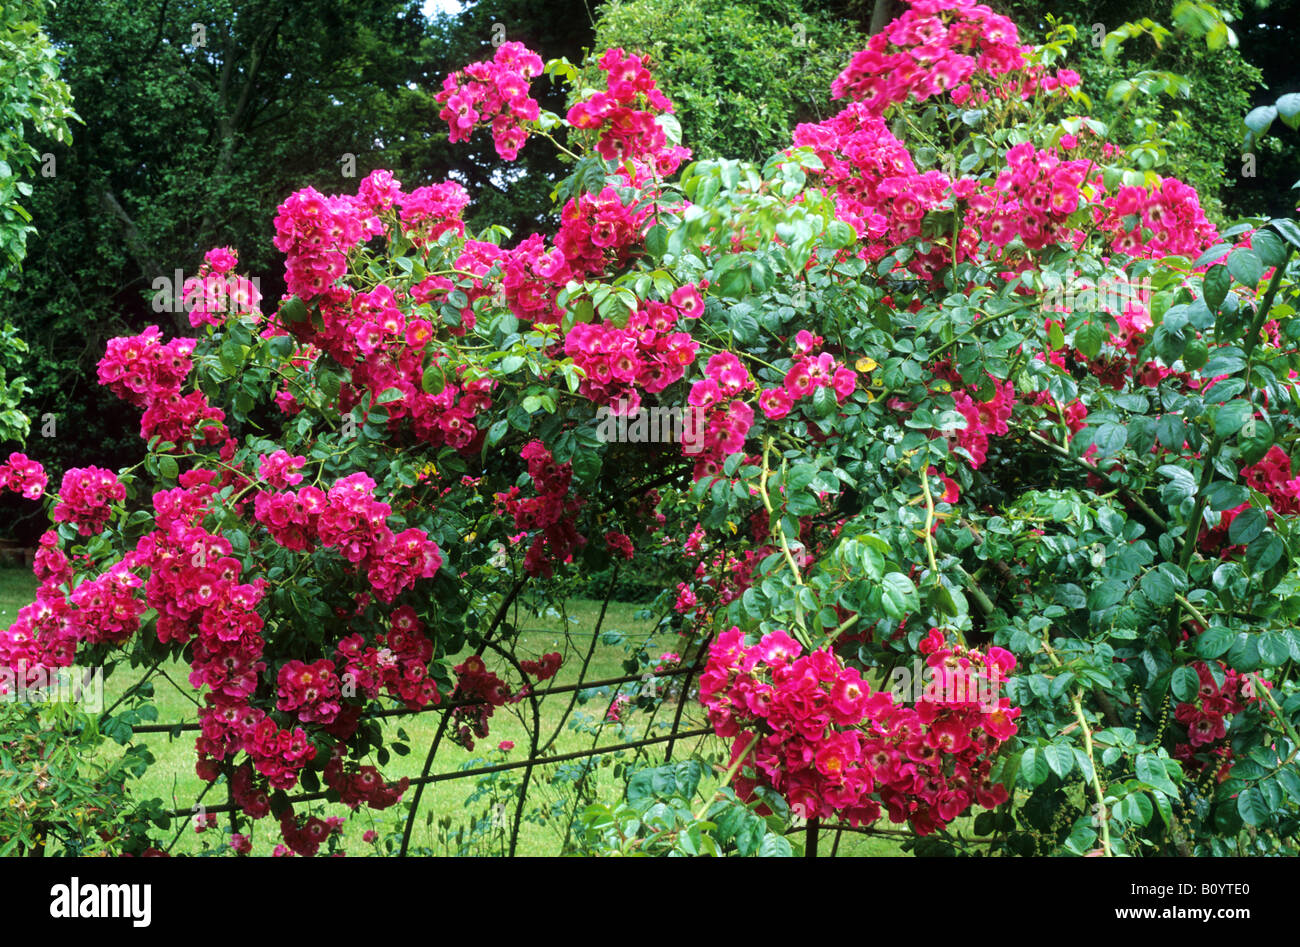 Rosa 'pilier américain' sur châssis métallique Rambler rouge escalade randonnée jardin de roses roses fleurs plantes Banque D'Images